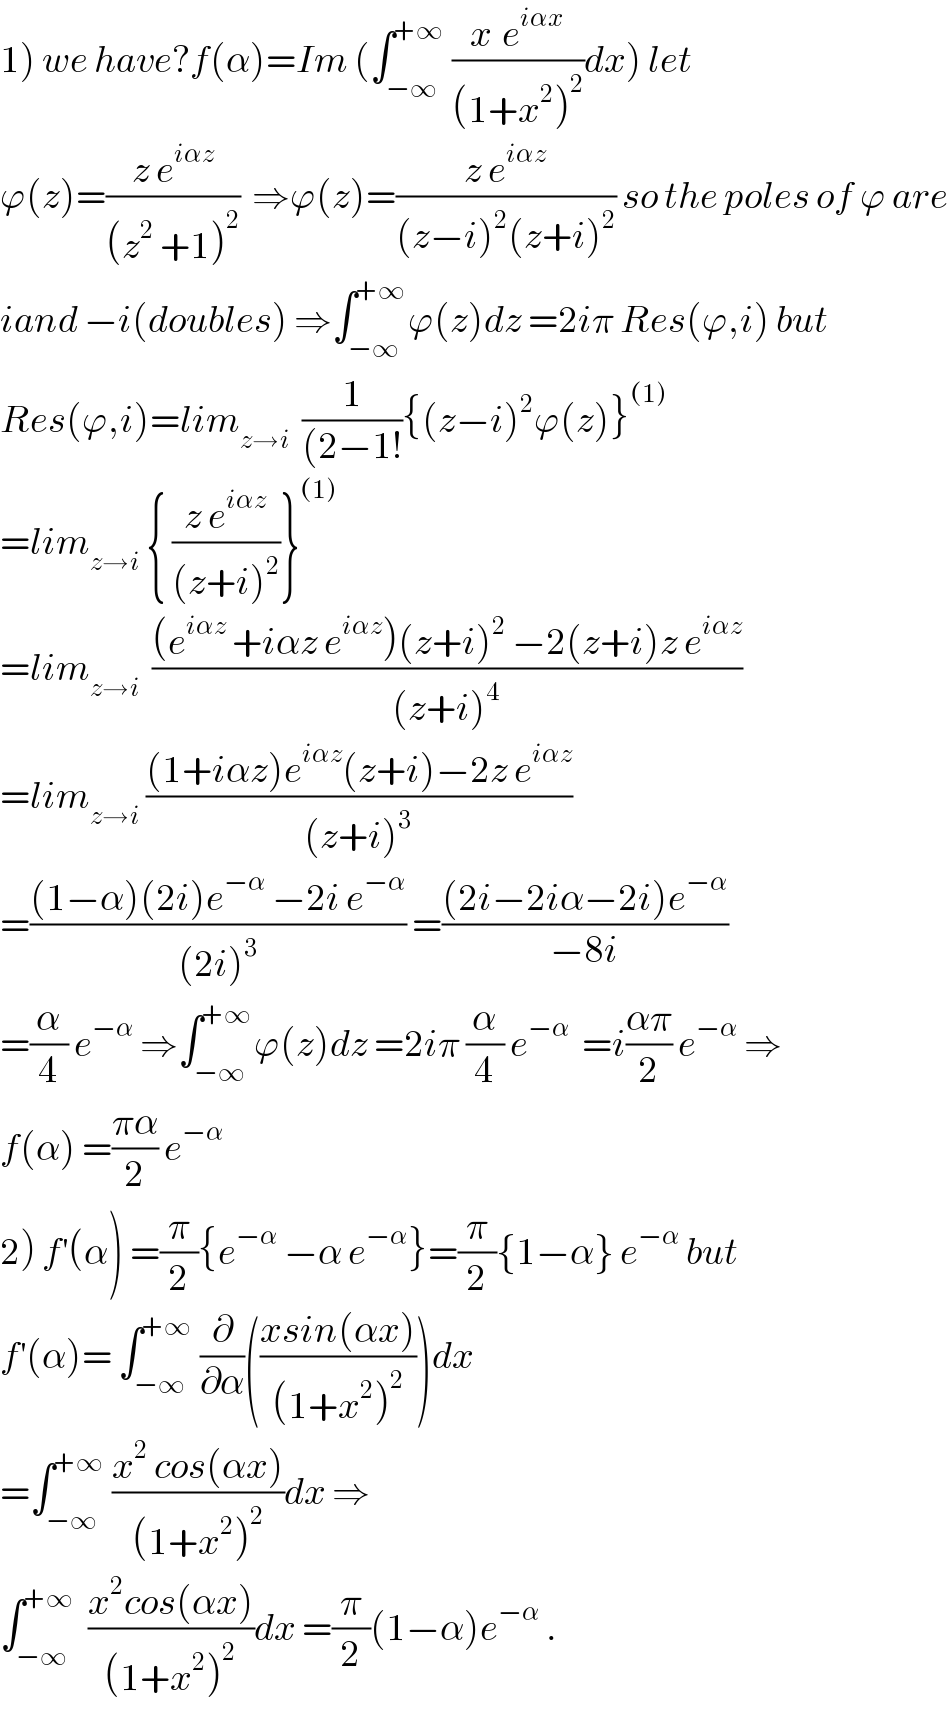 1) we have?f(α)=Im (∫_(−∞) ^(+∞)  ((x^ e^(iαx) )/((1+x^2 )^2 ))dx) let  ϕ(z)=((z e^(iαz) )/((z^2  +1)^2 ))  ⇒ϕ(z)=((z e^(iαz) )/((z−i)^2 (z+i)^2 )) so the poles of ϕ are  iand −i(doubles) ⇒∫_(−∞) ^(+∞) ϕ(z)dz =2iπ Res(ϕ,i) but  Res(ϕ,i)=lim_(z→i)   (1/((2−1!)){(z−i)^2 ϕ(z)}^((1))   =lim_(z→i)  { ((z e^(iαz) )/((z+i)^2 ))}^((1))   =lim_(z→i)   (((e^(iαz)  +iαz e^(iαz) )(z+i)^2  −2(z+i)z e^(iαz) )/((z+i)^4 ))  =lim_(z→i)  (((1+iαz)e^(iαz) (z+i)−2z e^(iαz) )/((z+i)^3 ))  =(((1−α)(2i)e^(−α)  −2i e^(−α) )/((2i)^3 )) =(((2i−2iα−2i)e^(−α) )/(−8i))  =(α/4) e^(−α)  ⇒∫_(−∞) ^(+∞) ϕ(z)dz =2iπ (α/4) e^(−α)   =i((απ)/2) e^(−α)  ⇒  f(α) =((πα)/2) e^(−α)   2) f^′ (α) =(π/2){e^(−α)  −α e^(−α) }=(π/2){1−α} e^(−α)  but  f^′ (α)= ∫_(−∞) ^(+∞)  (∂/∂α)(((xsin(αx))/((1+x^2 )^2 )))dx  =∫_(−∞) ^(+∞)  ((x^2  cos(αx))/((1+x^2 )^2 ))dx ⇒  ∫_(−∞) ^(+∞)   ((x^2 cos(αx))/((1+x^2 )^2 ))dx =(π/2)(1−α)e^(−α)  .  